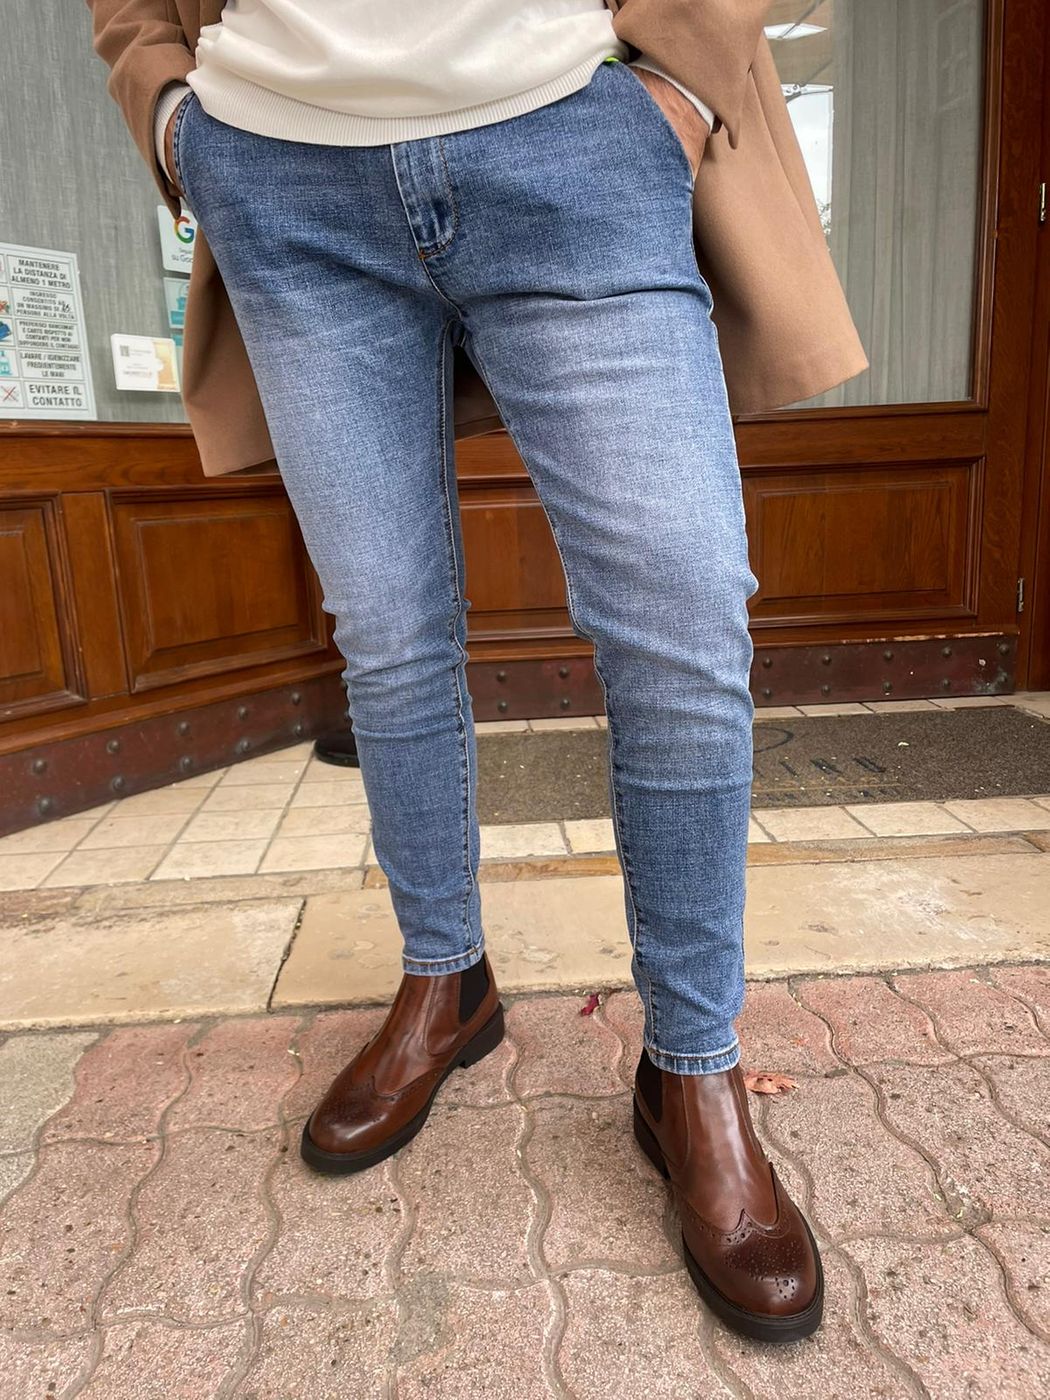 America capri pocket jeans in stretch fabric